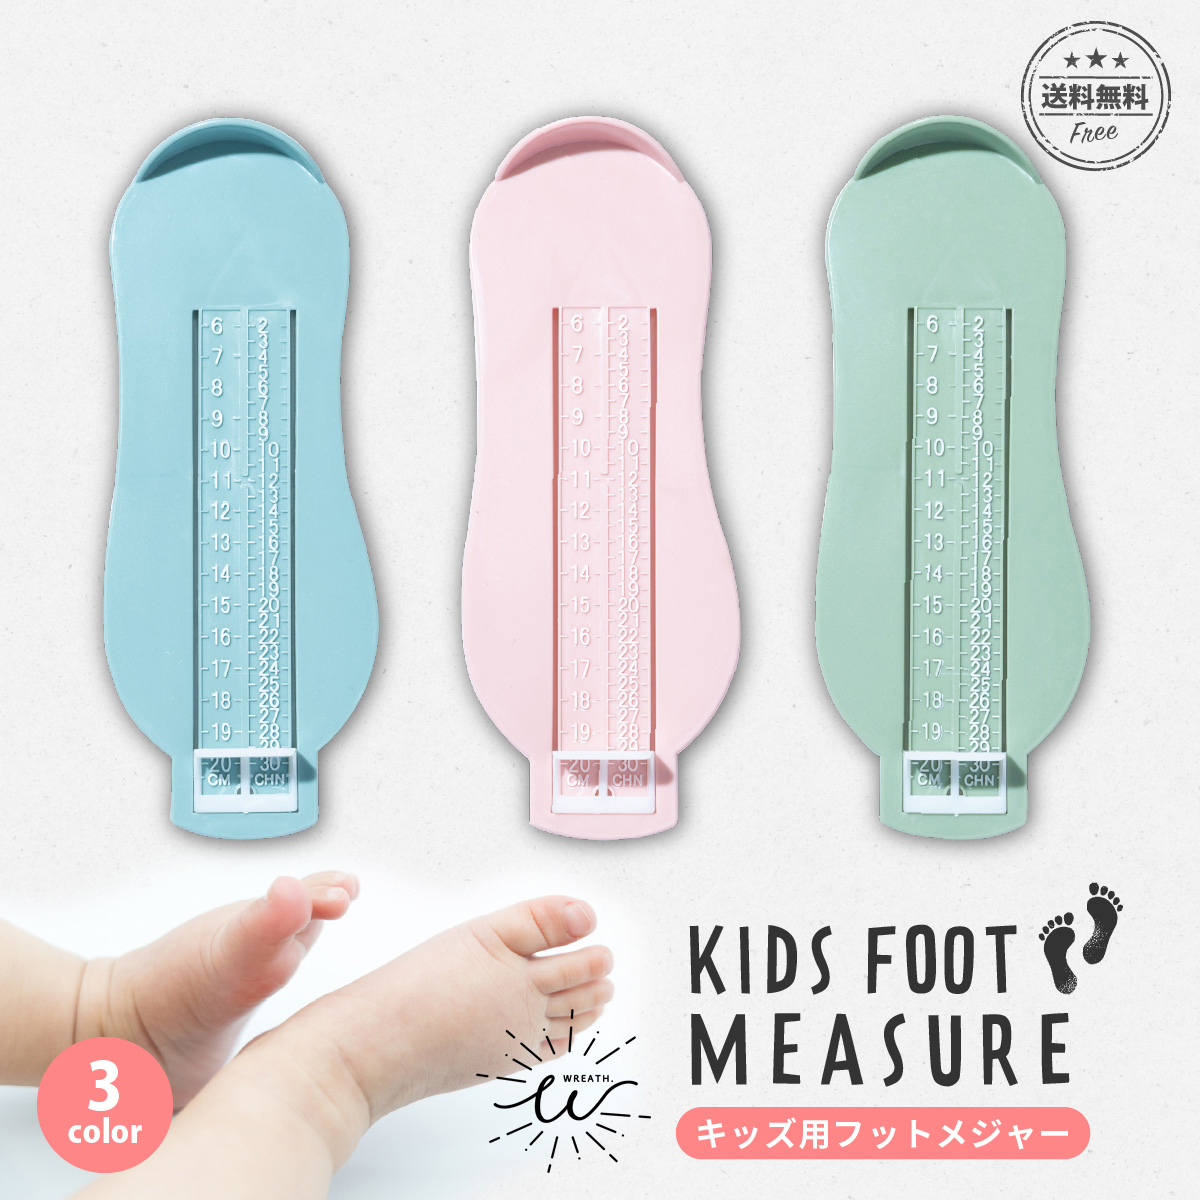 送料無料 フットメジャー キッズ 幼児 子供 6から20センチ 赤ちゃん 足 足のサイズ 計測器 ベビースケール